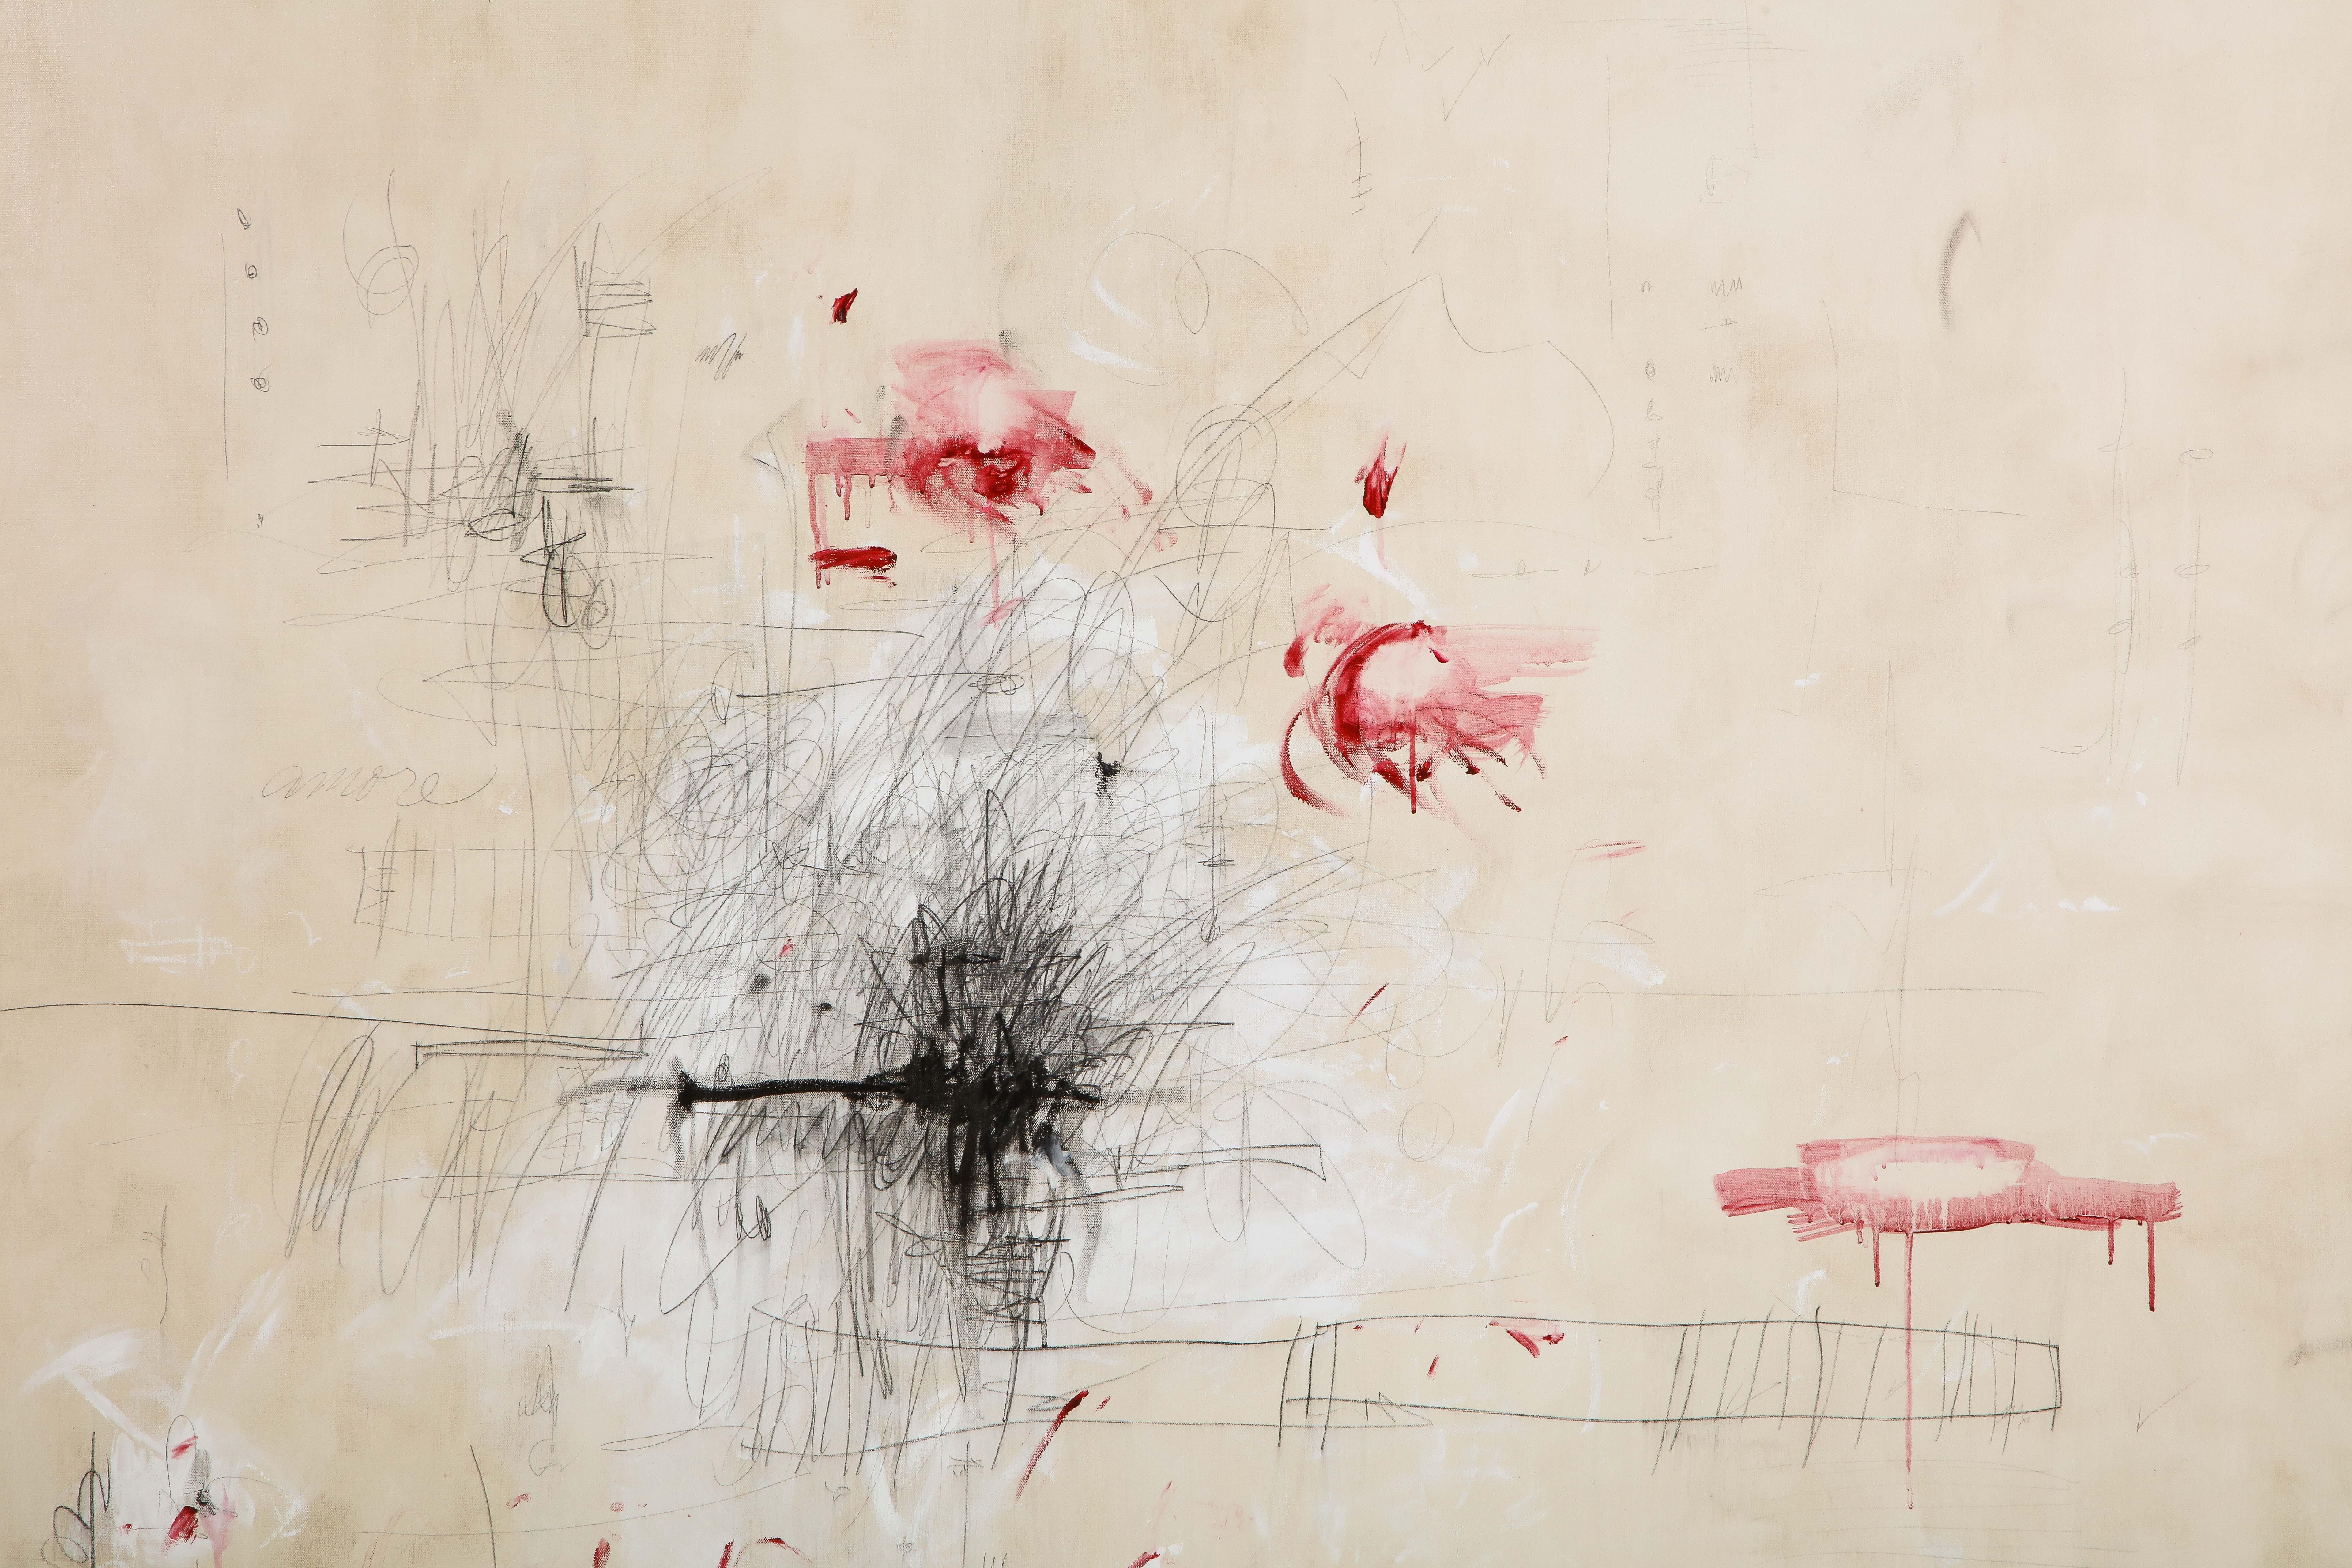 Großes Gemälde „Amore“ in Elfenbein-:: Weiß-:: Schwarz- und Rottönen:: 2::44 m x 3::66 m (Abstrakter Expressionismus), Painting, von Karina Gentinetta